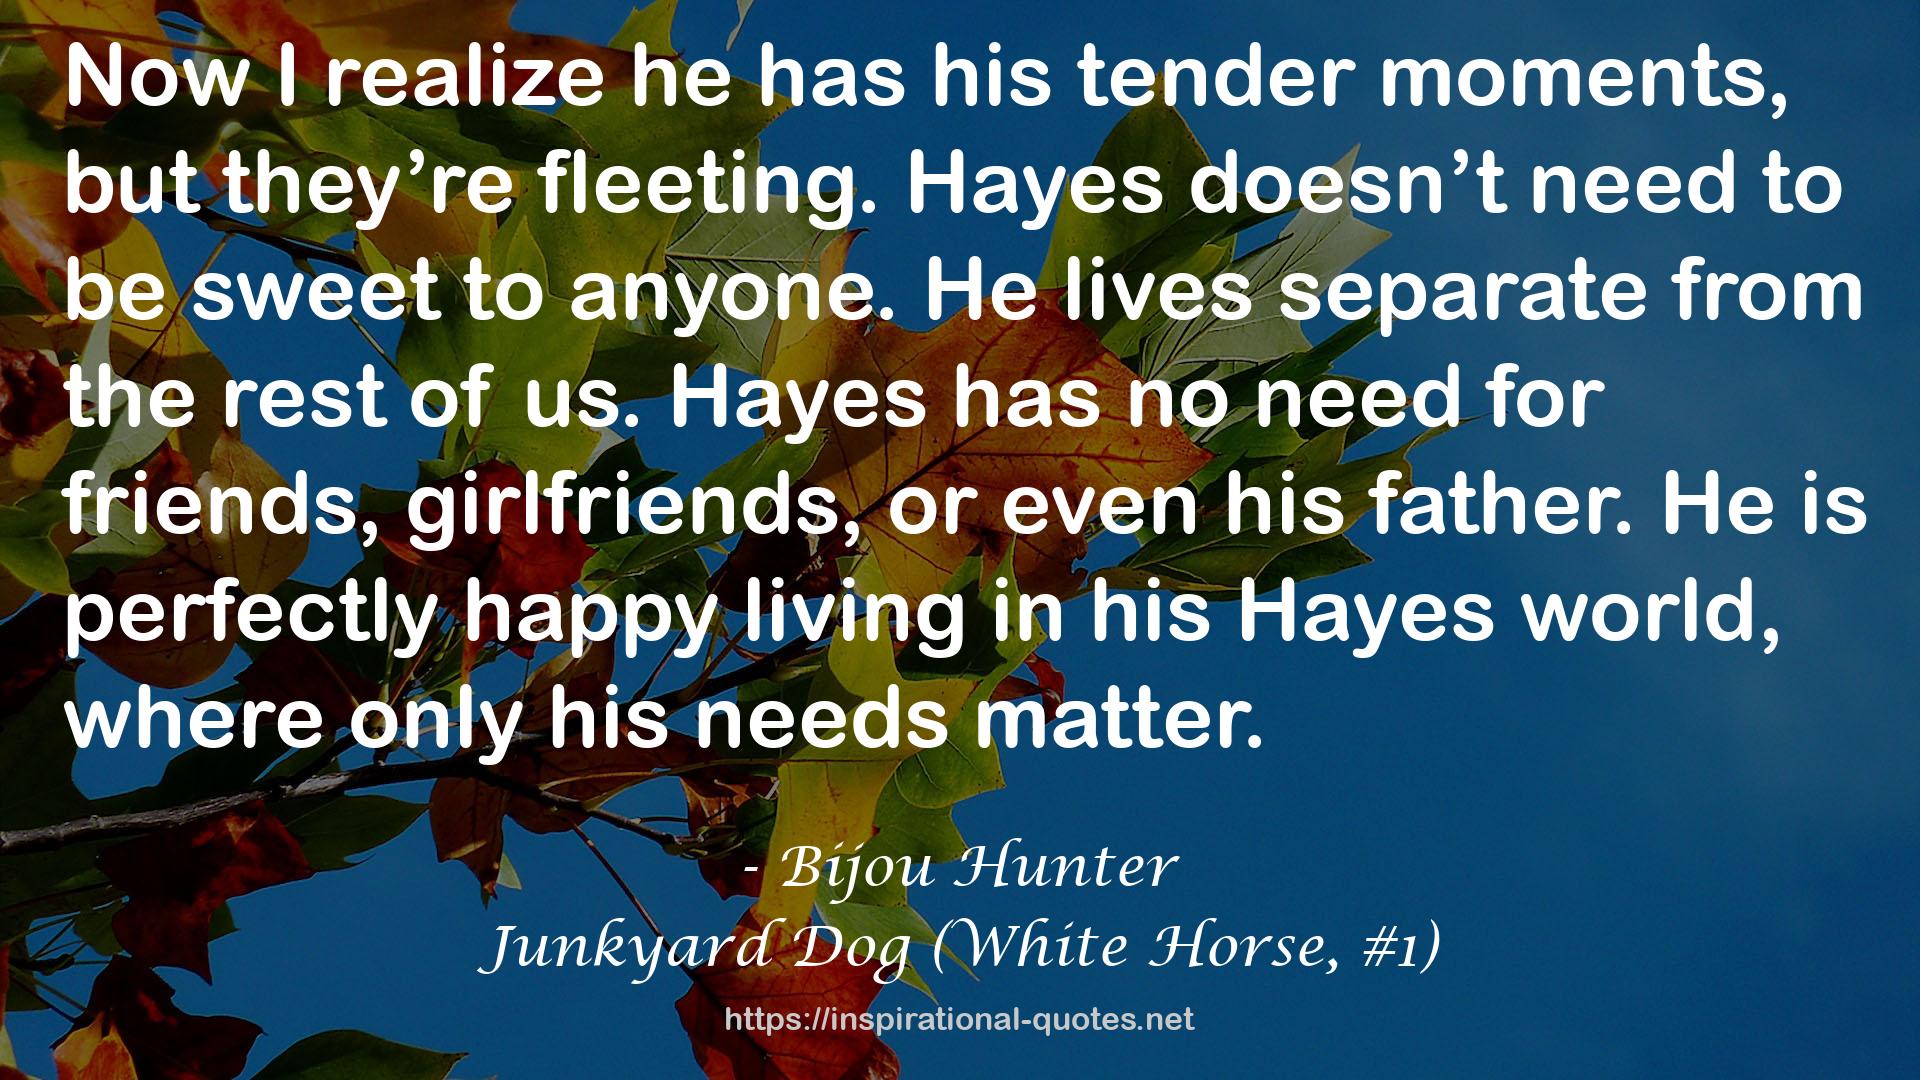 Junkyard Dog (White Horse, #1) QUOTES